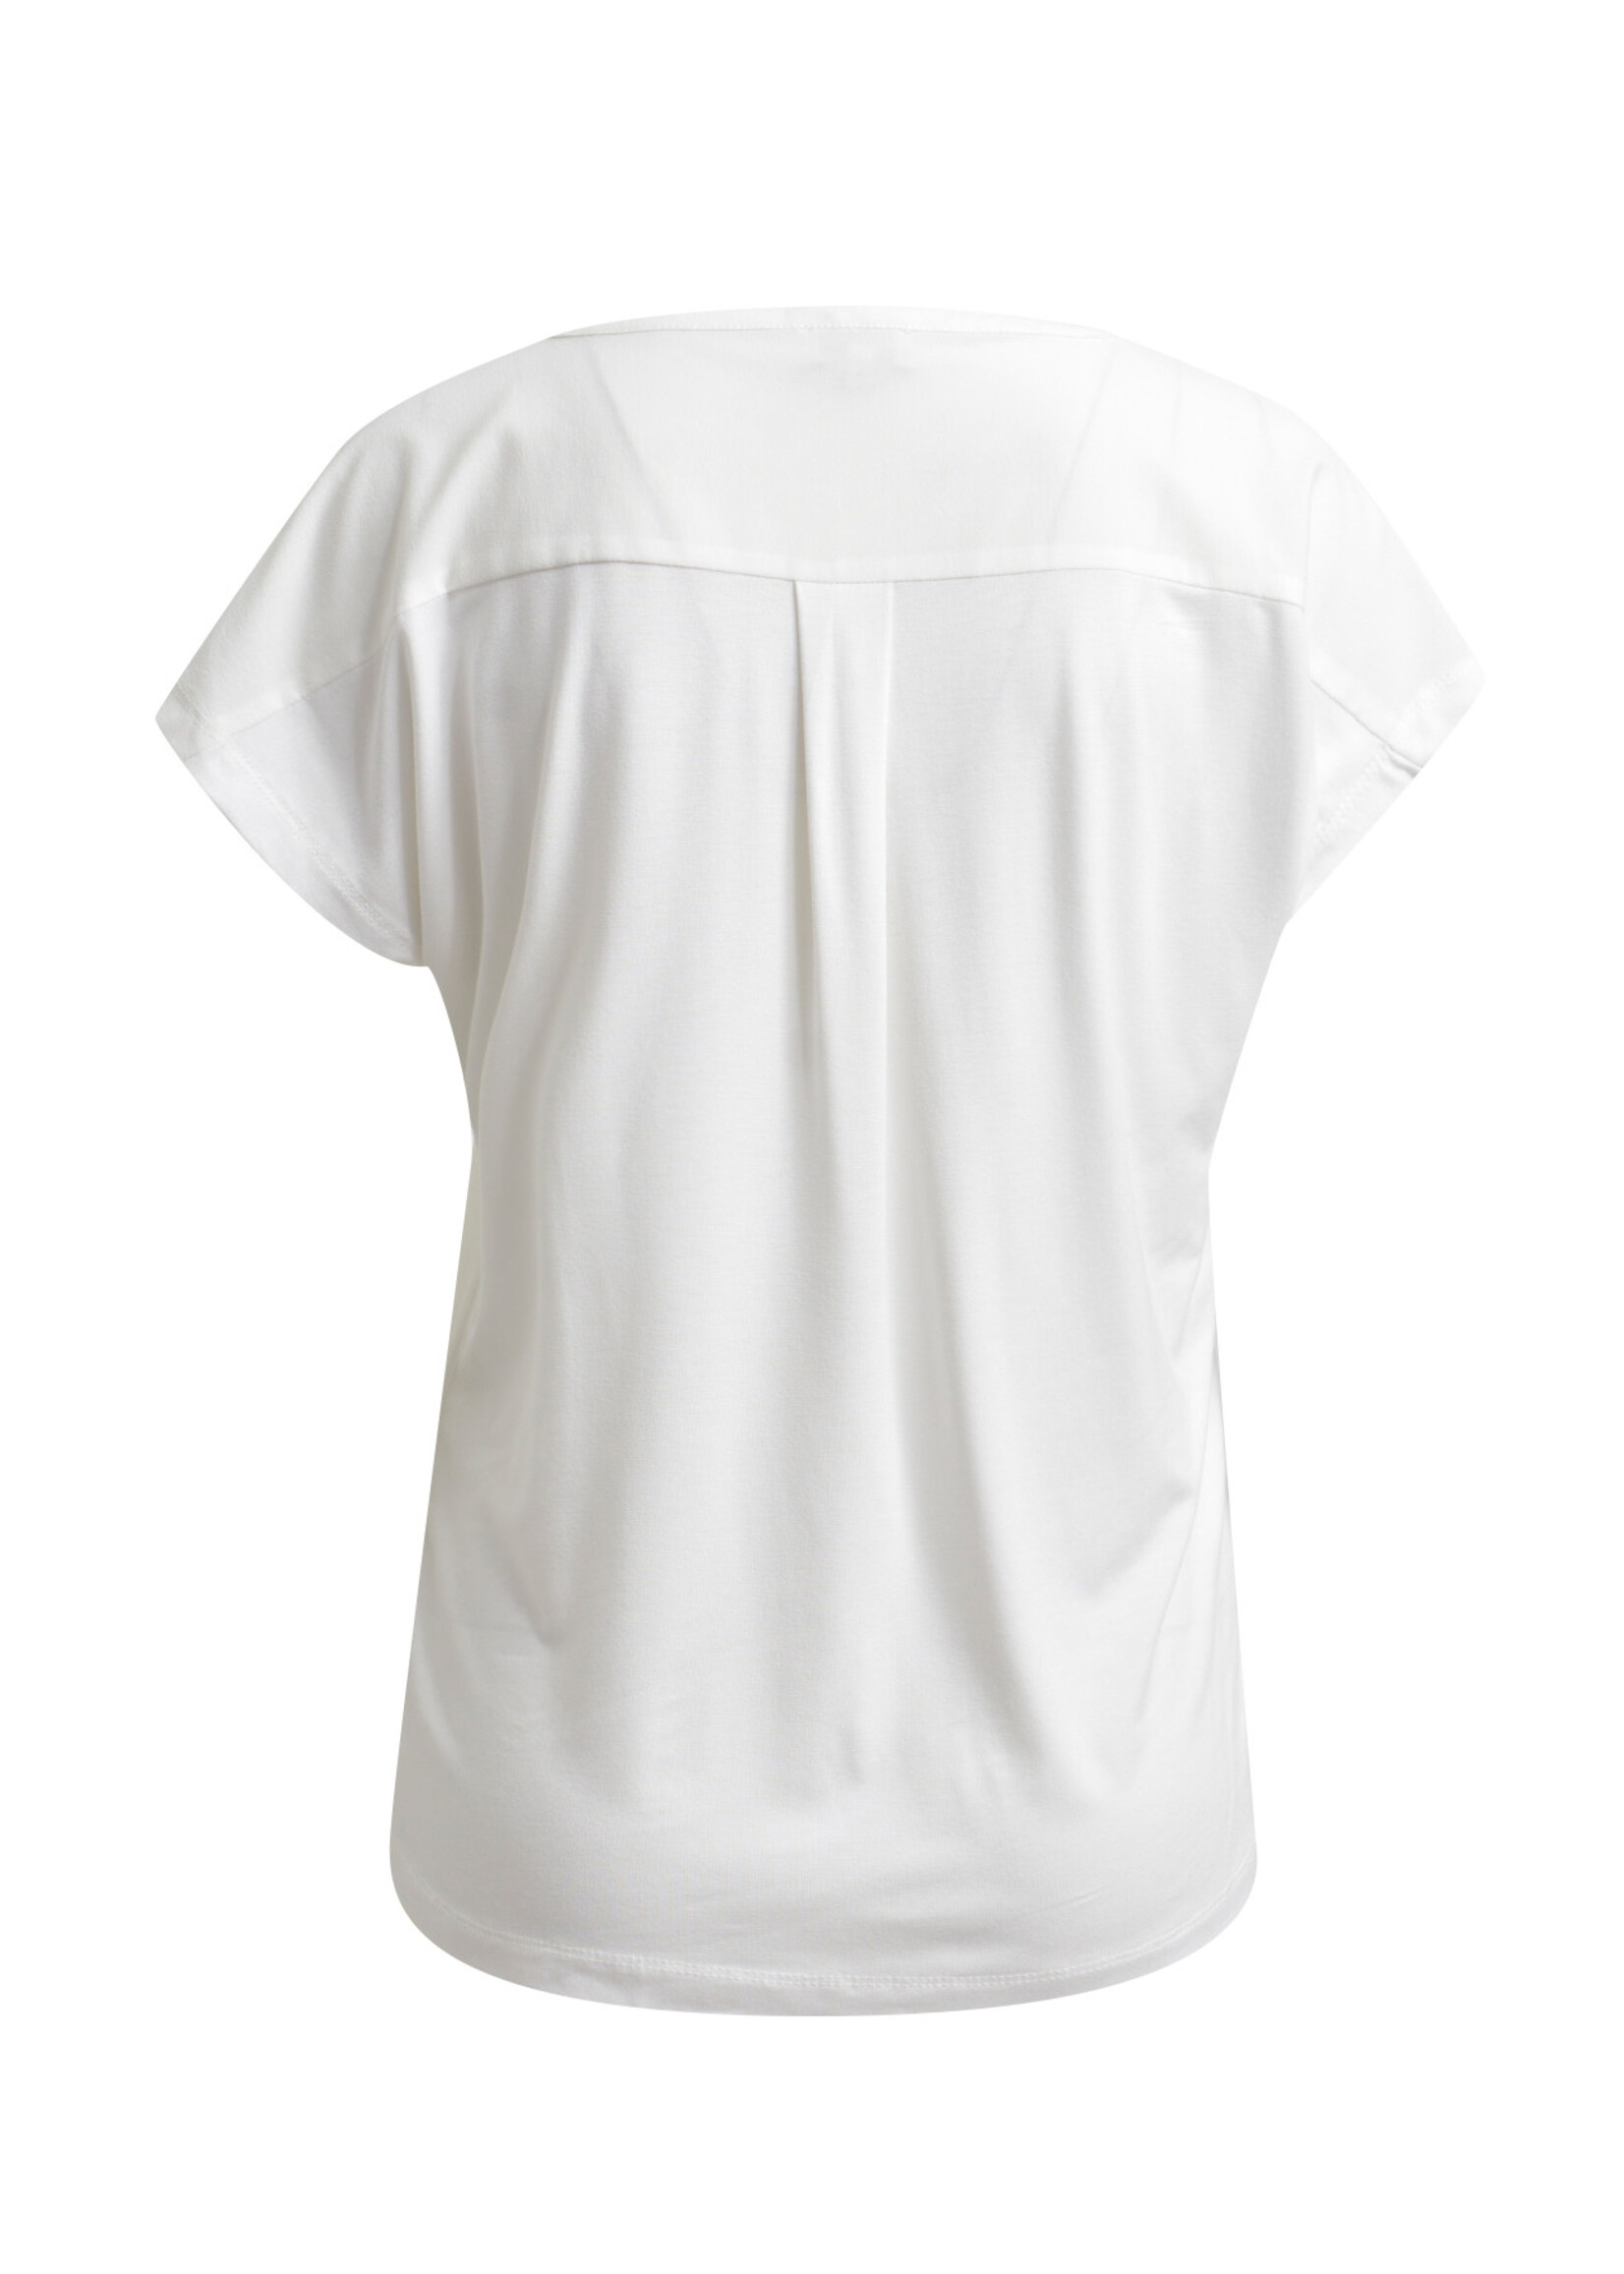 Milano Sleeveless blouseshirt w jersey back and chiffon front, w chestpo